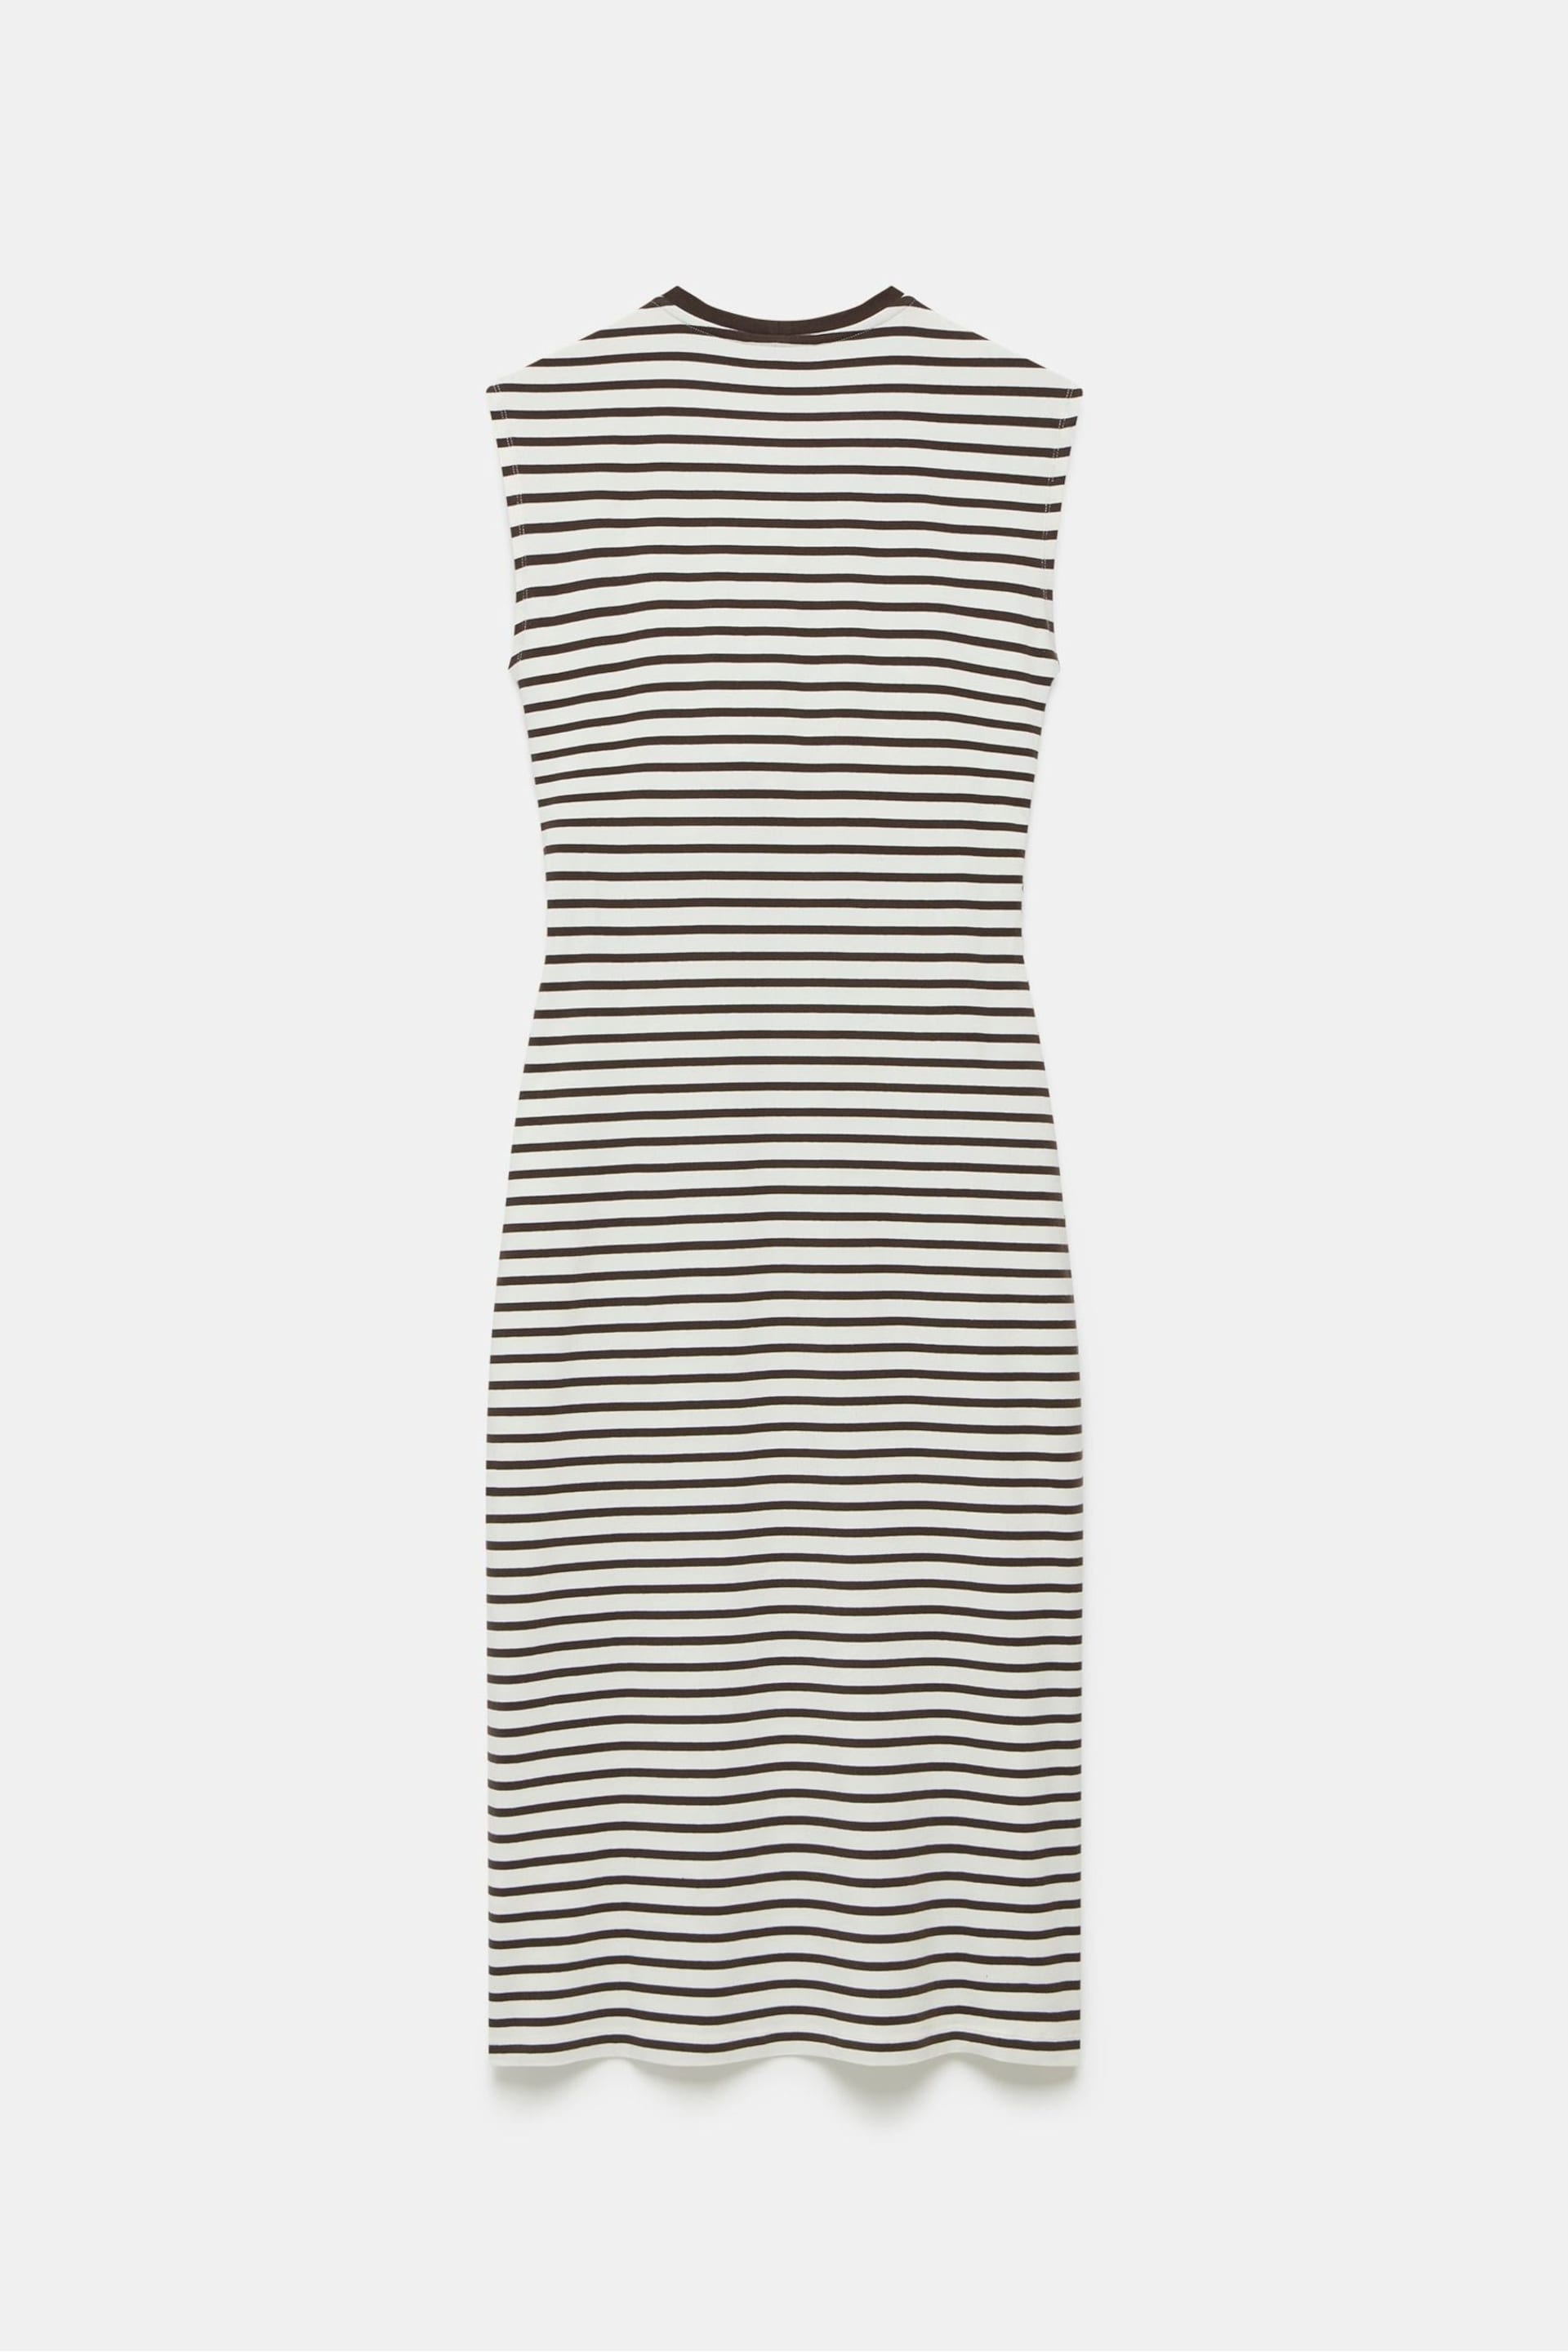 Mint Velvet Brown Twist Stripe Jersey Dress - Image 4 of 4